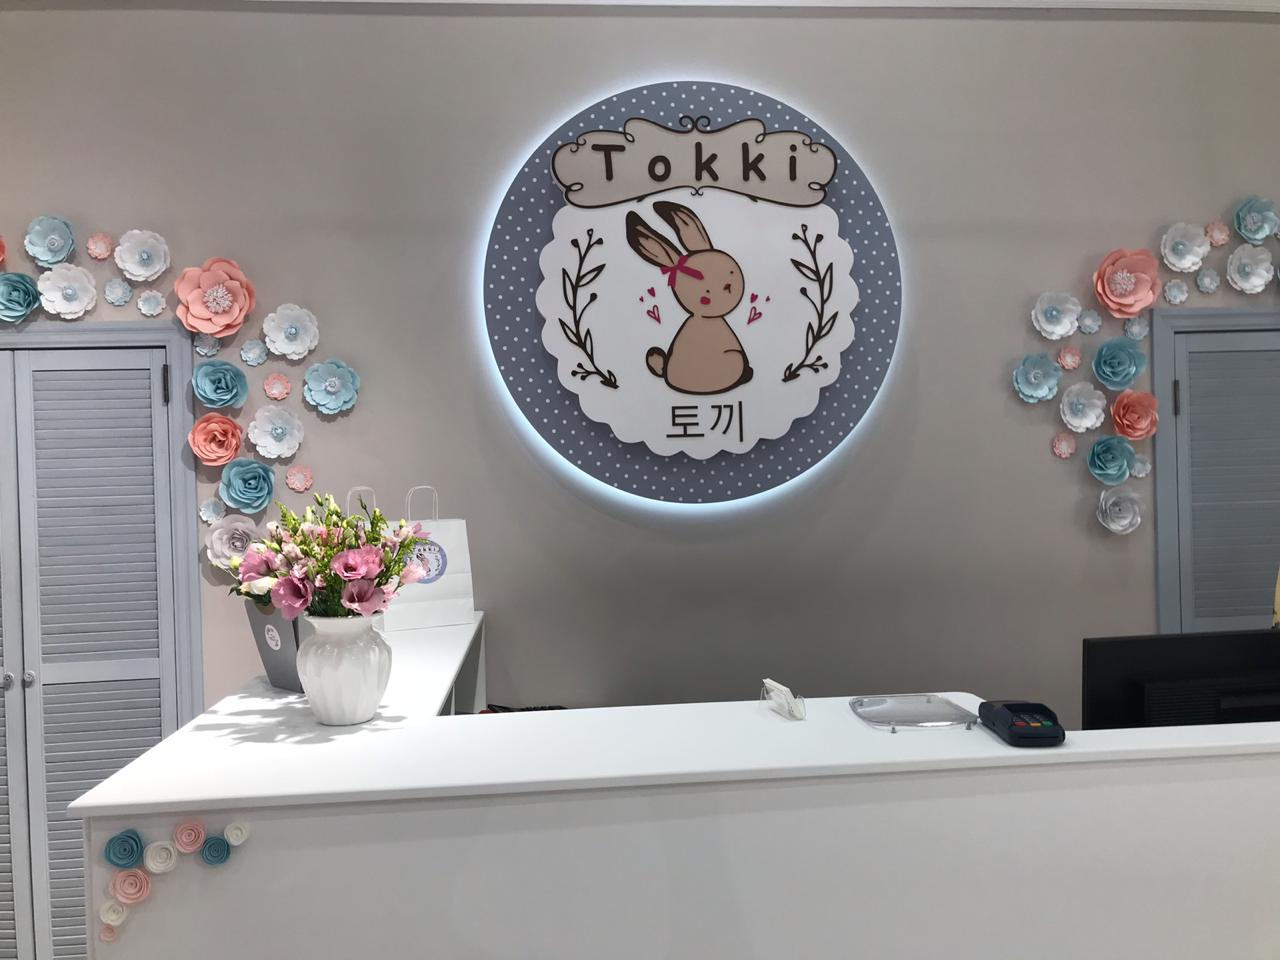 Открылся магазин корейской одежды для детей Tokki!